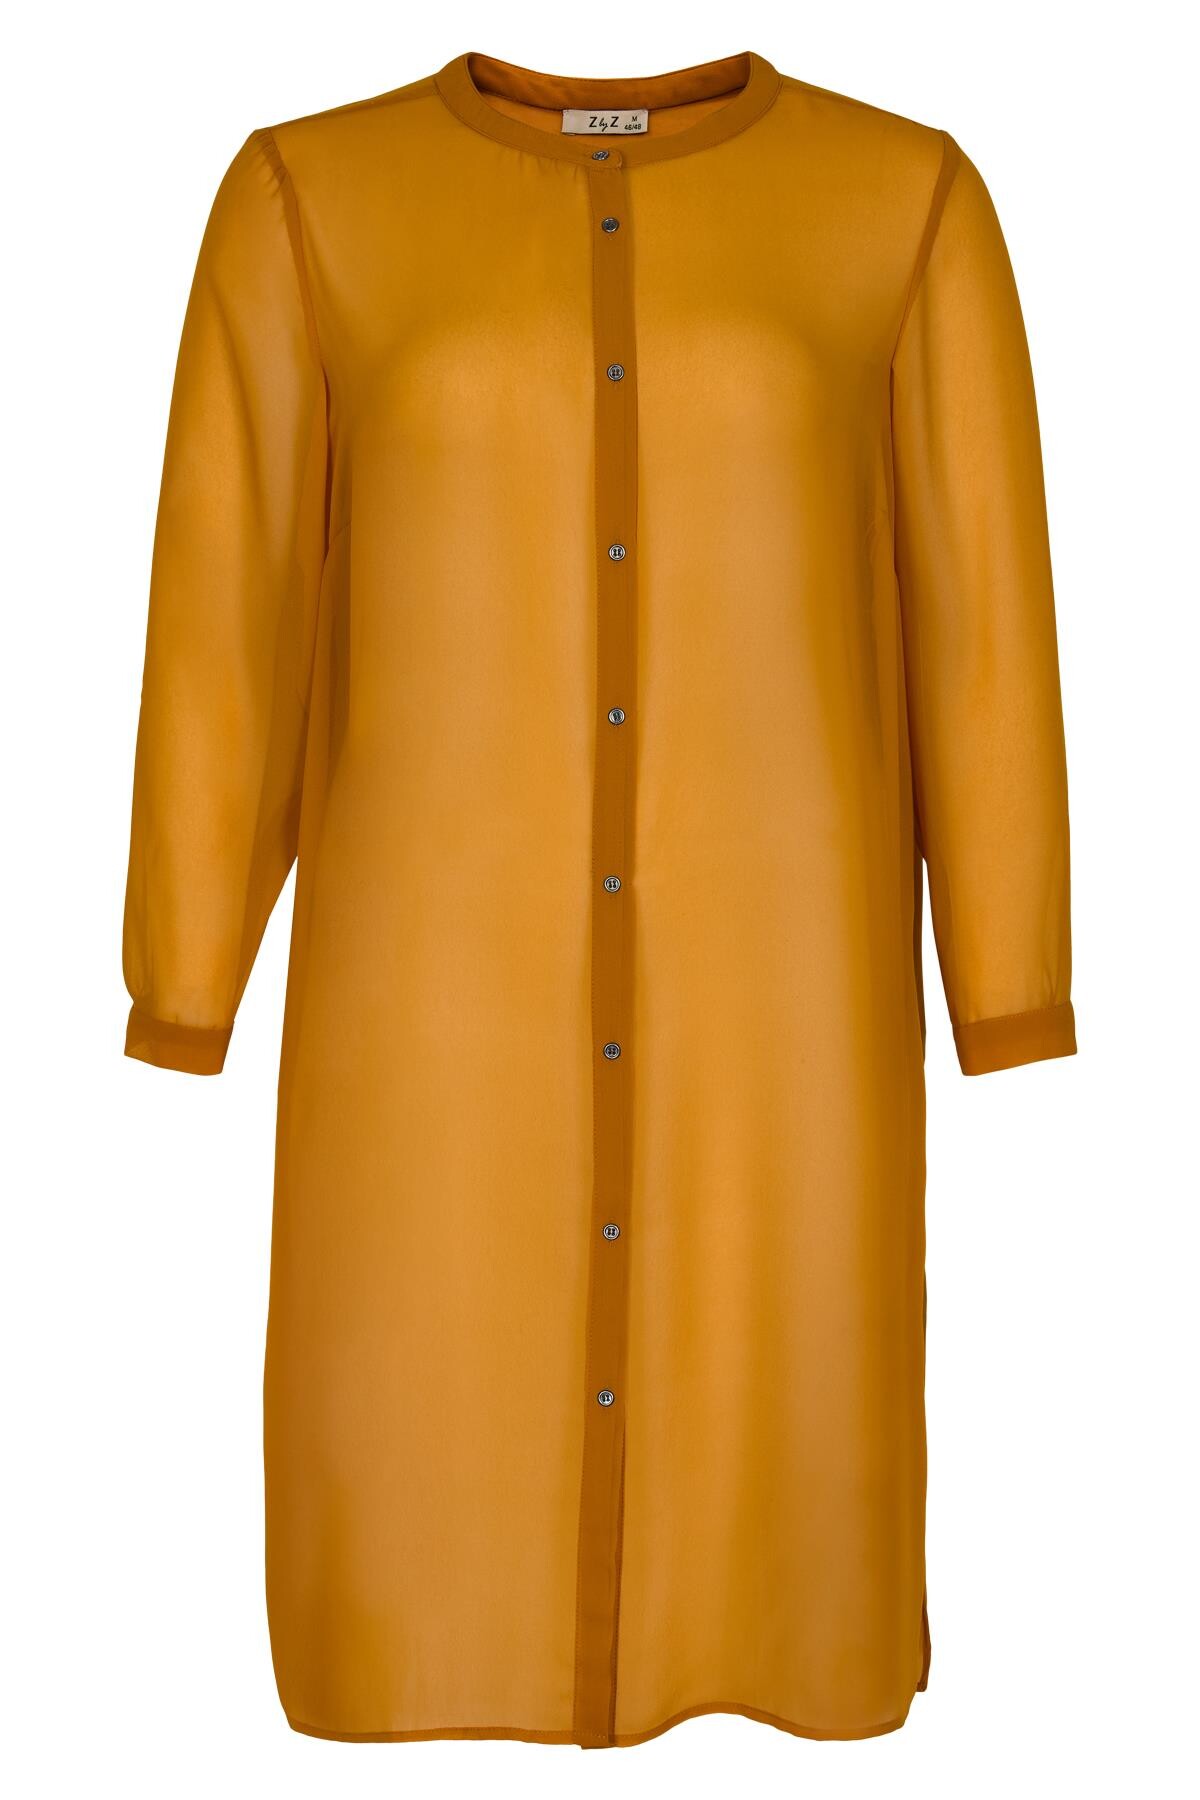 Zbyz Lang Skjorte Ez O, Farve: Orange, Størrelse: M, Dame